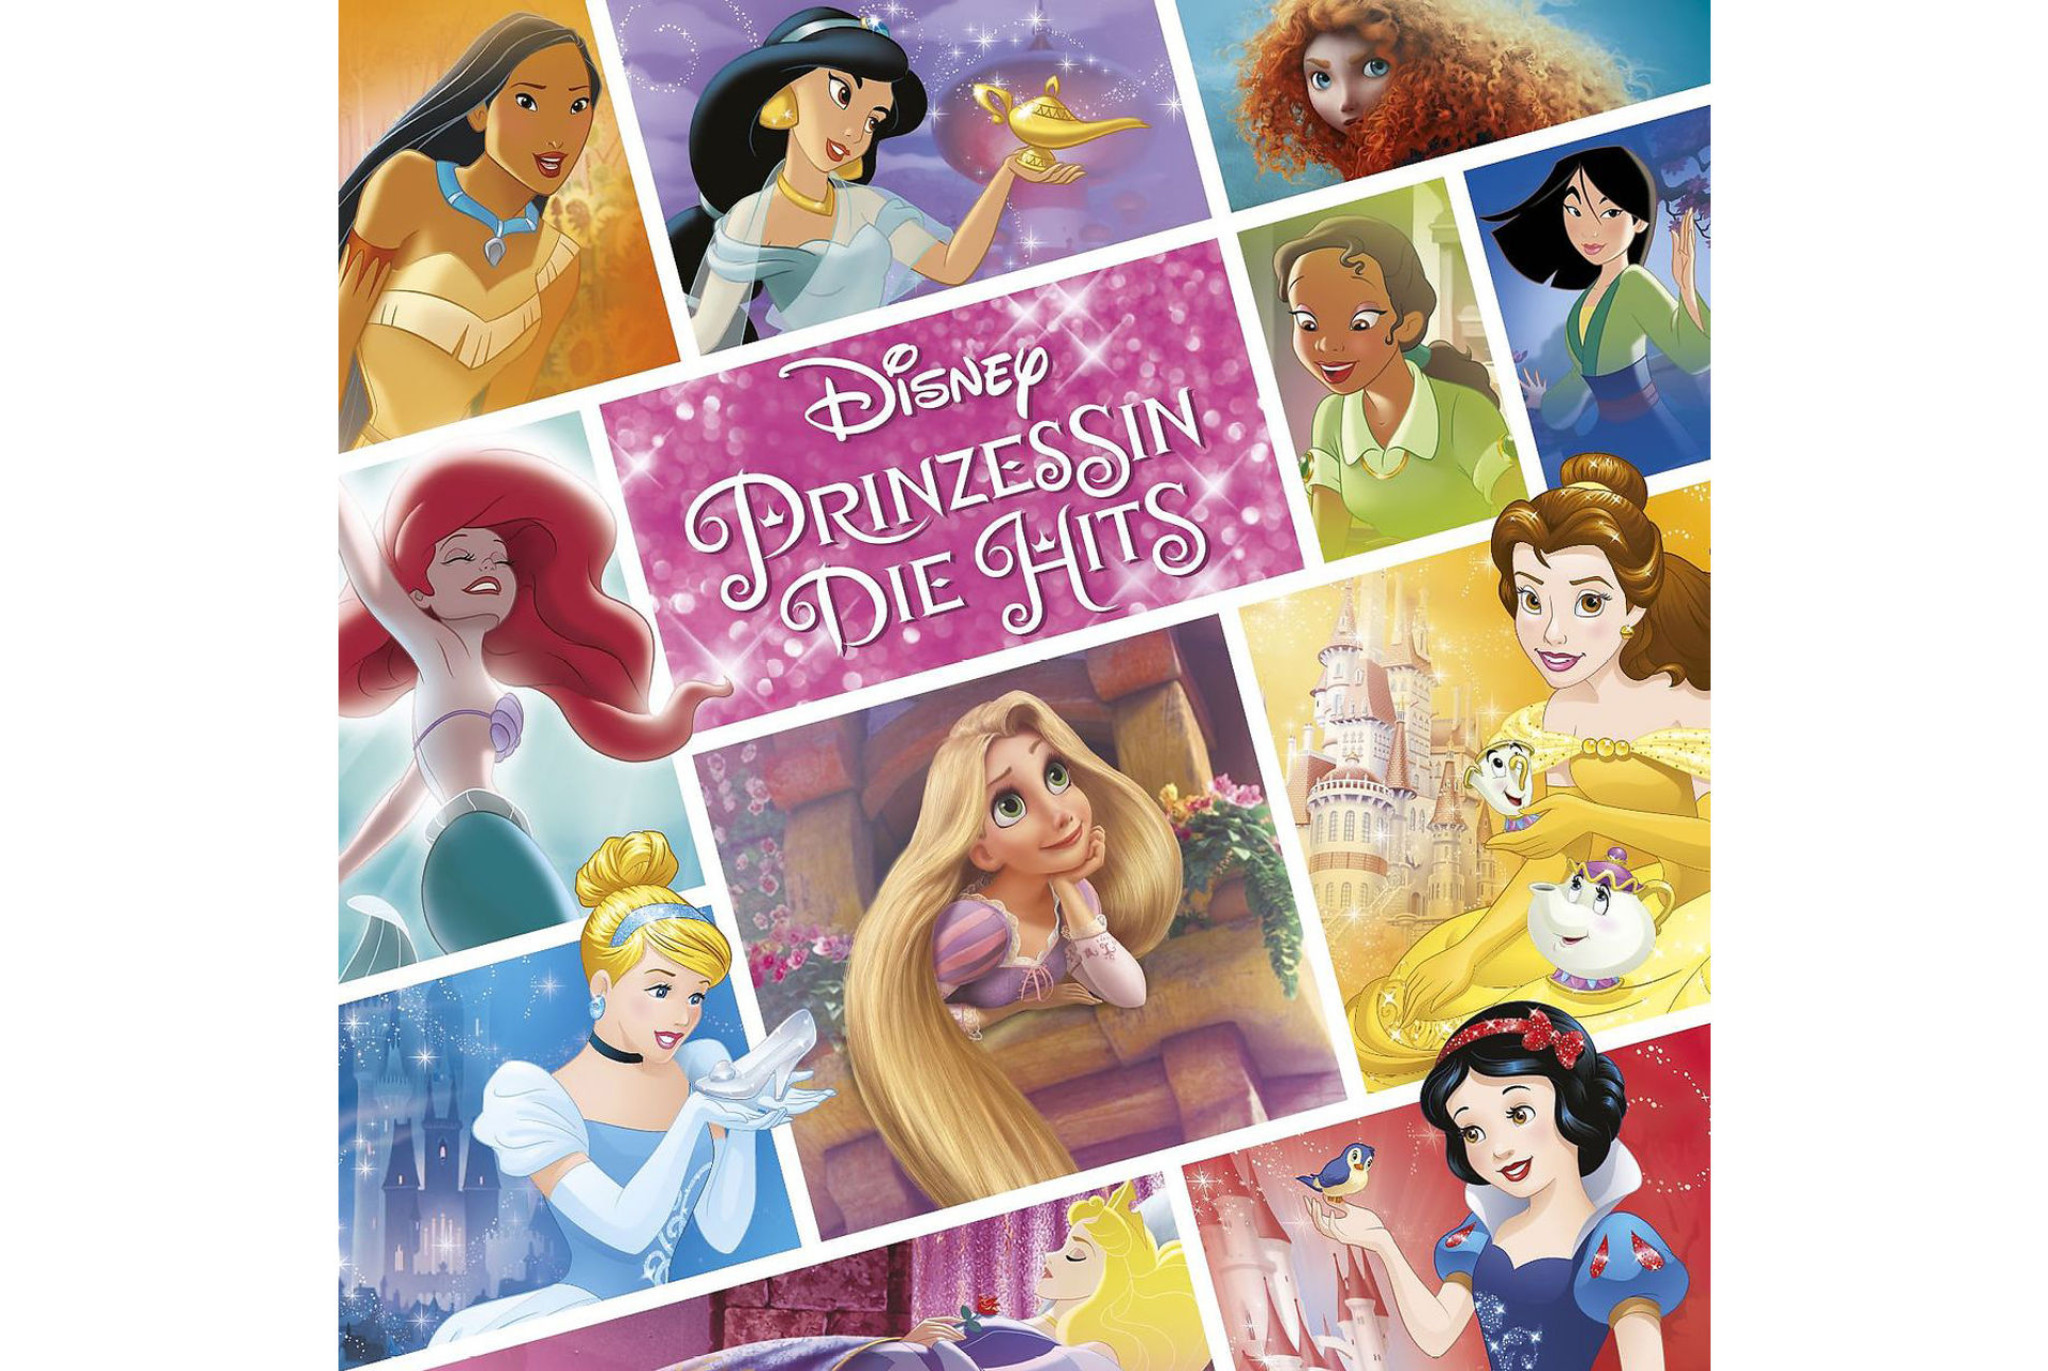 Disney Prinzessin Die Hits News 2